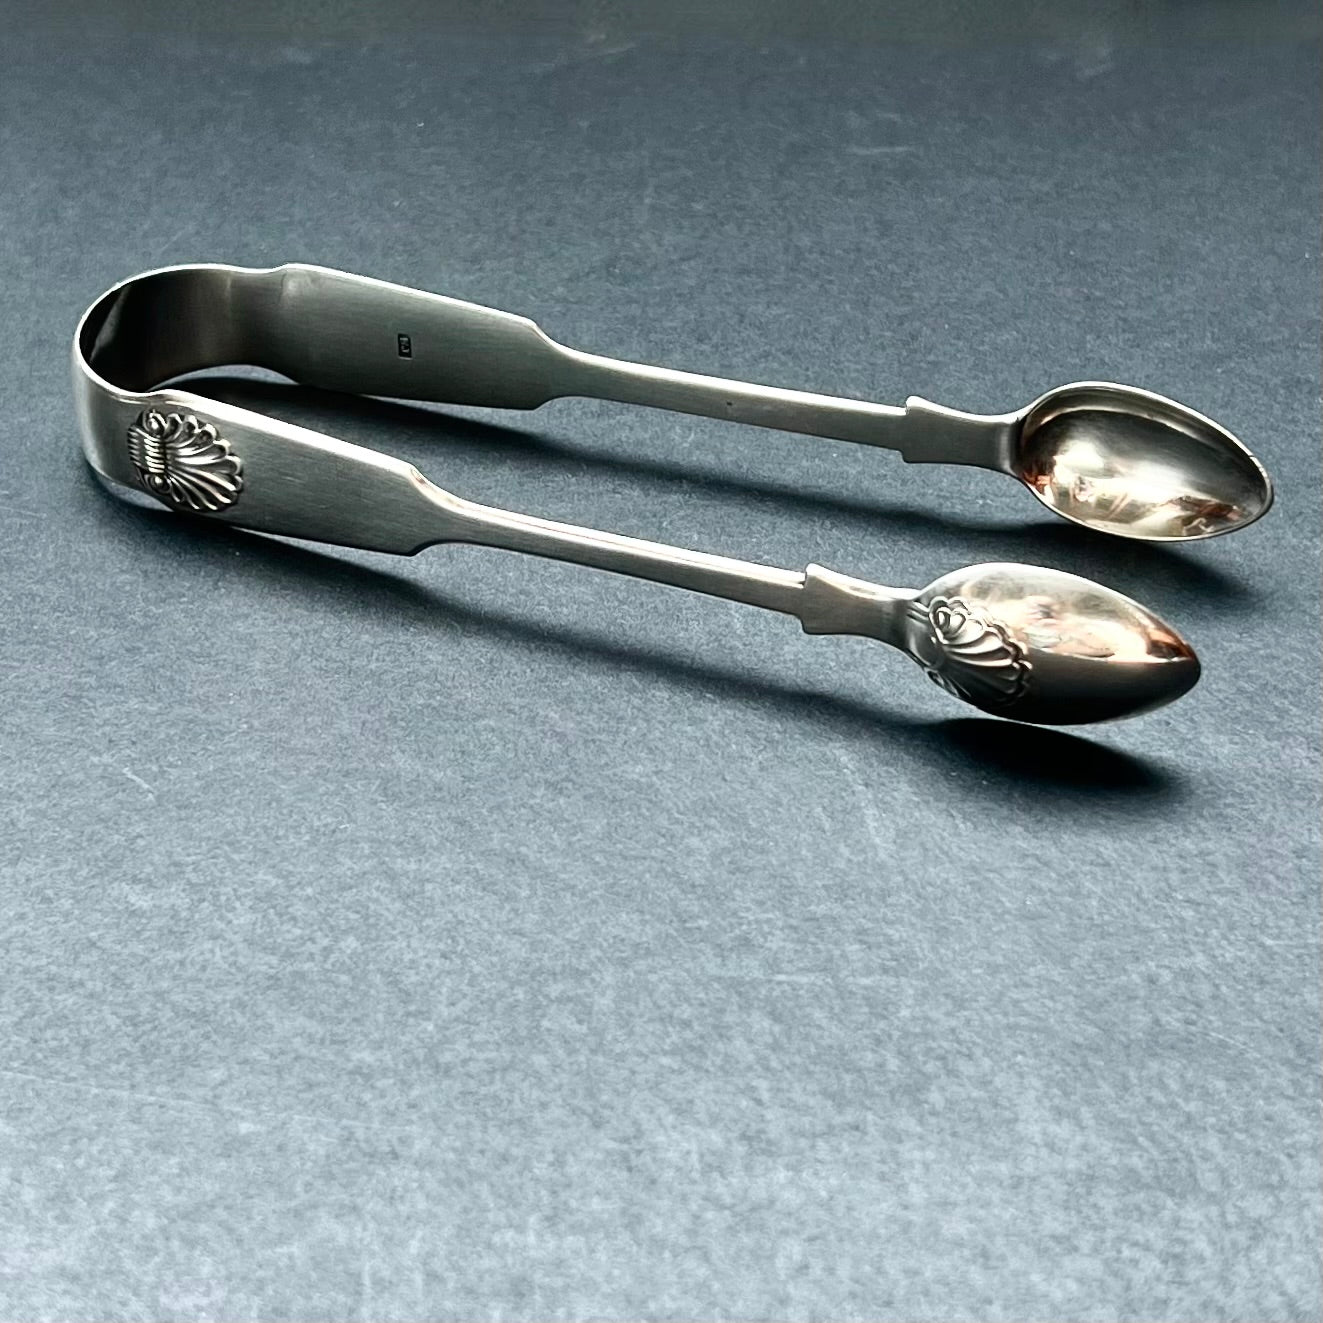 乔治王朝晚期至摄政时期英国乡村纯银钳子，厚度适中，标记清晰。多萝西·兰兰兹，纽卡斯尔，1804 年至 1814 年